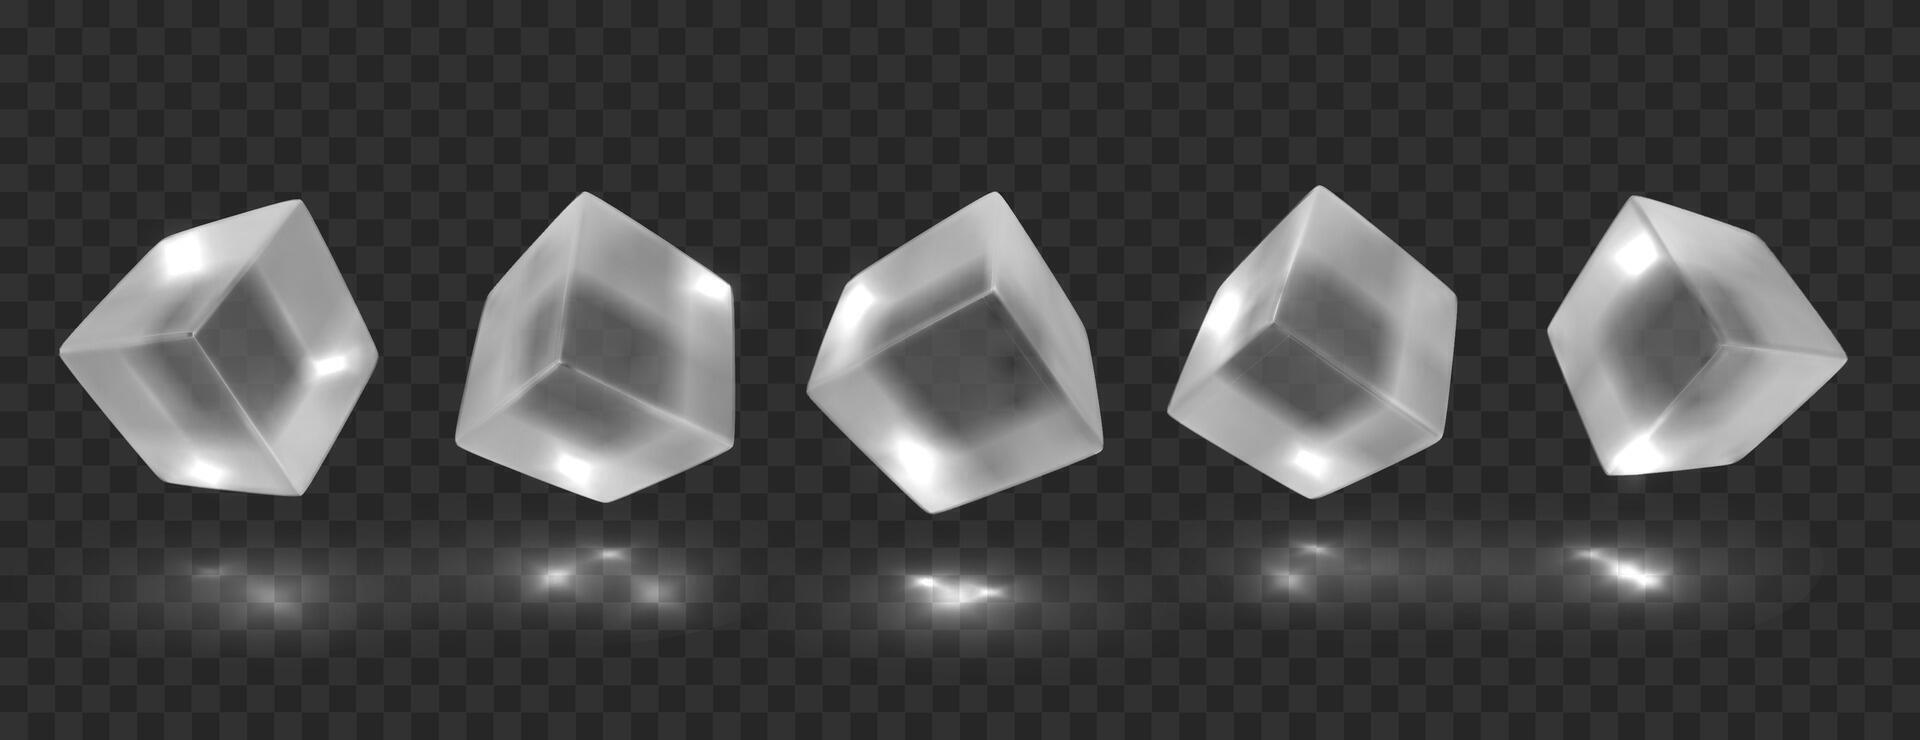 transparente cubitos en diferente anglos con reflexión. aislado lustroso geométrico objetos. realista 3d vector ilustración